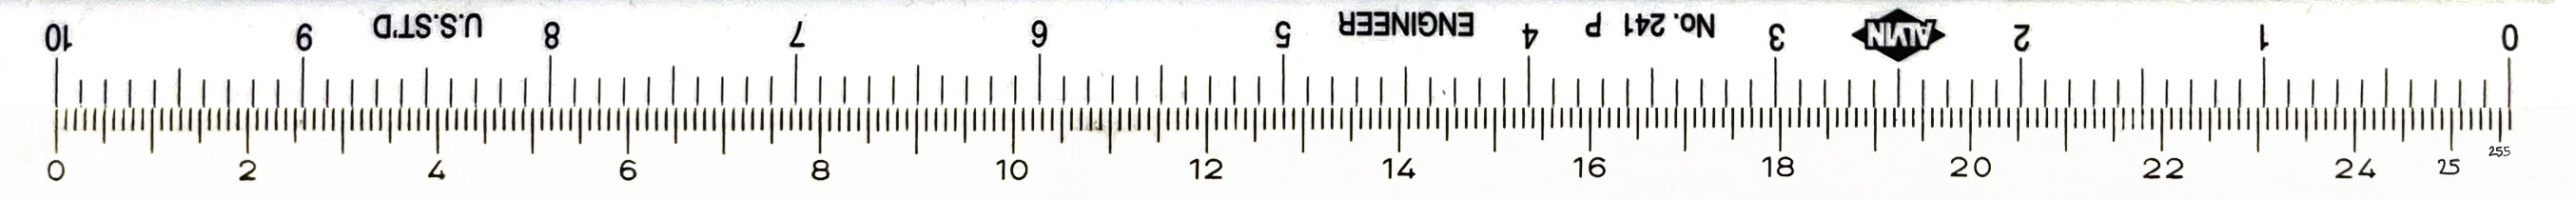 256-100-ruler